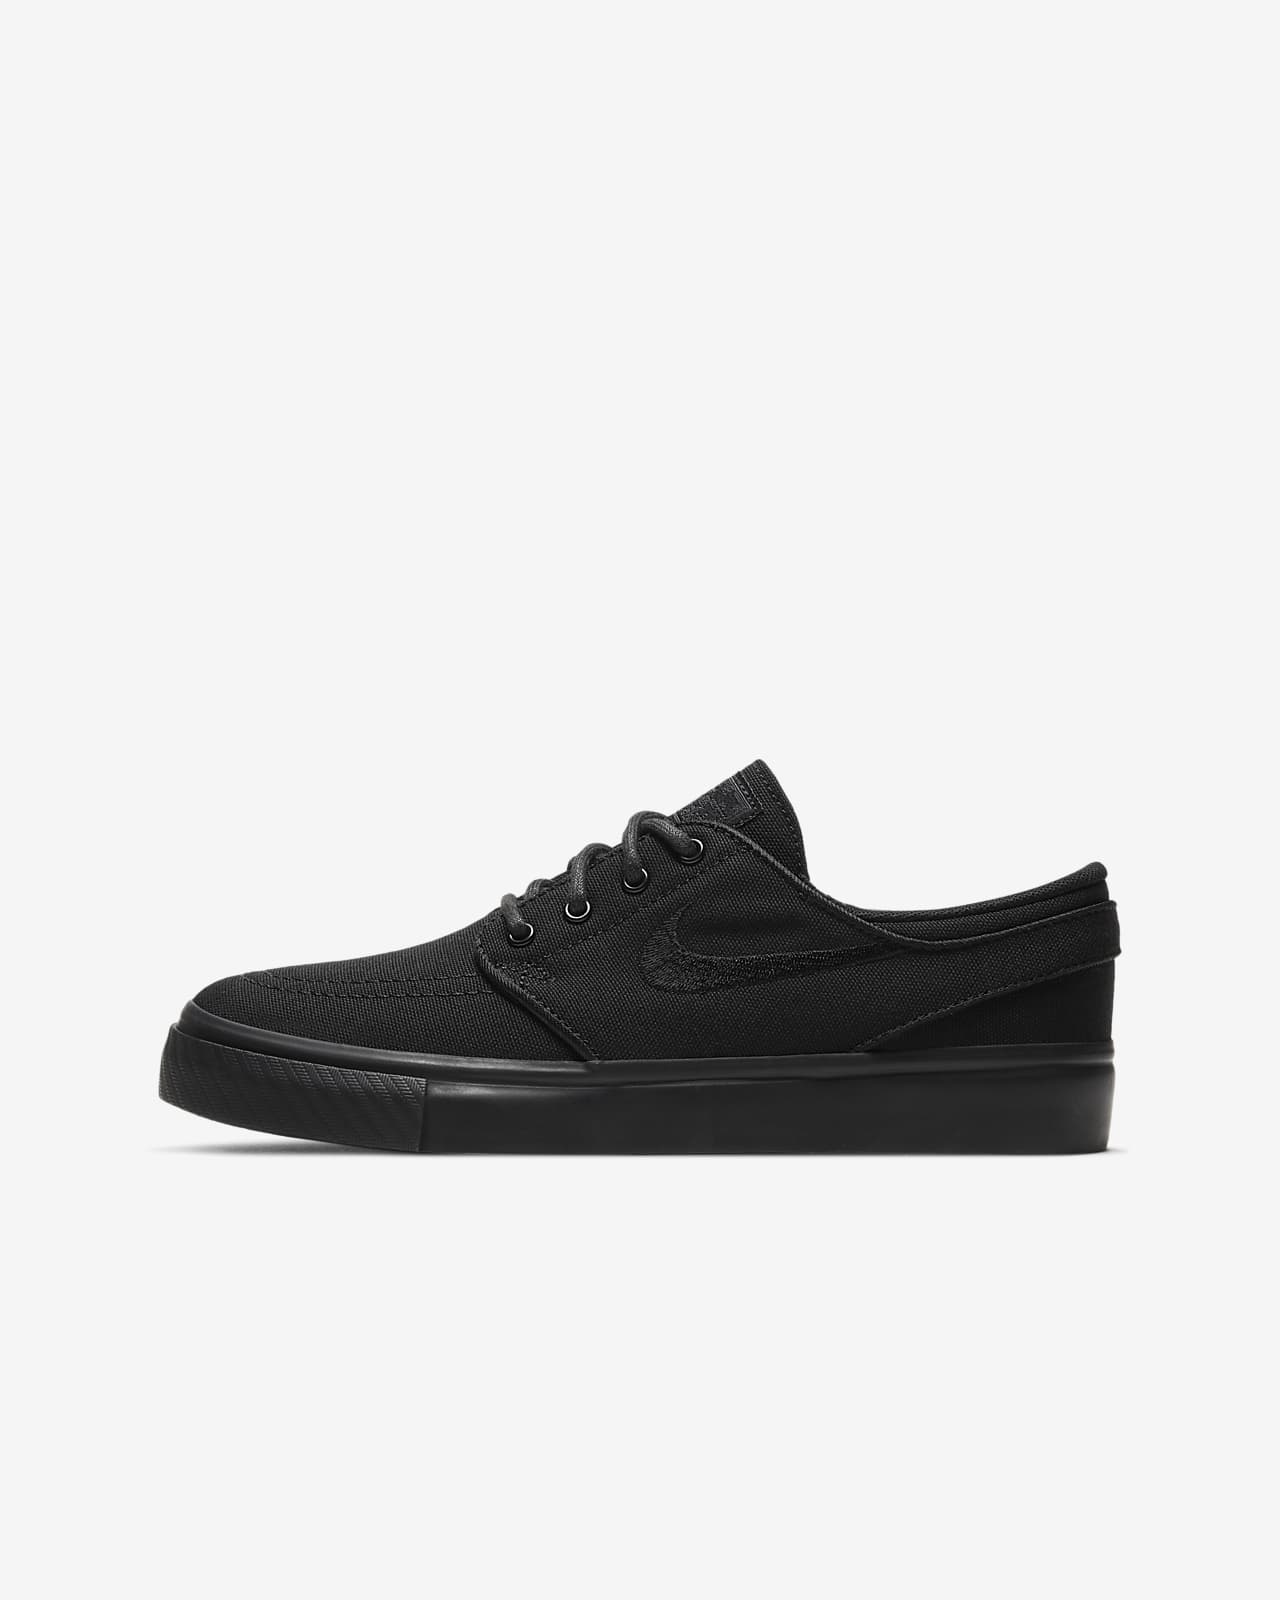 stefan janoski shoes black